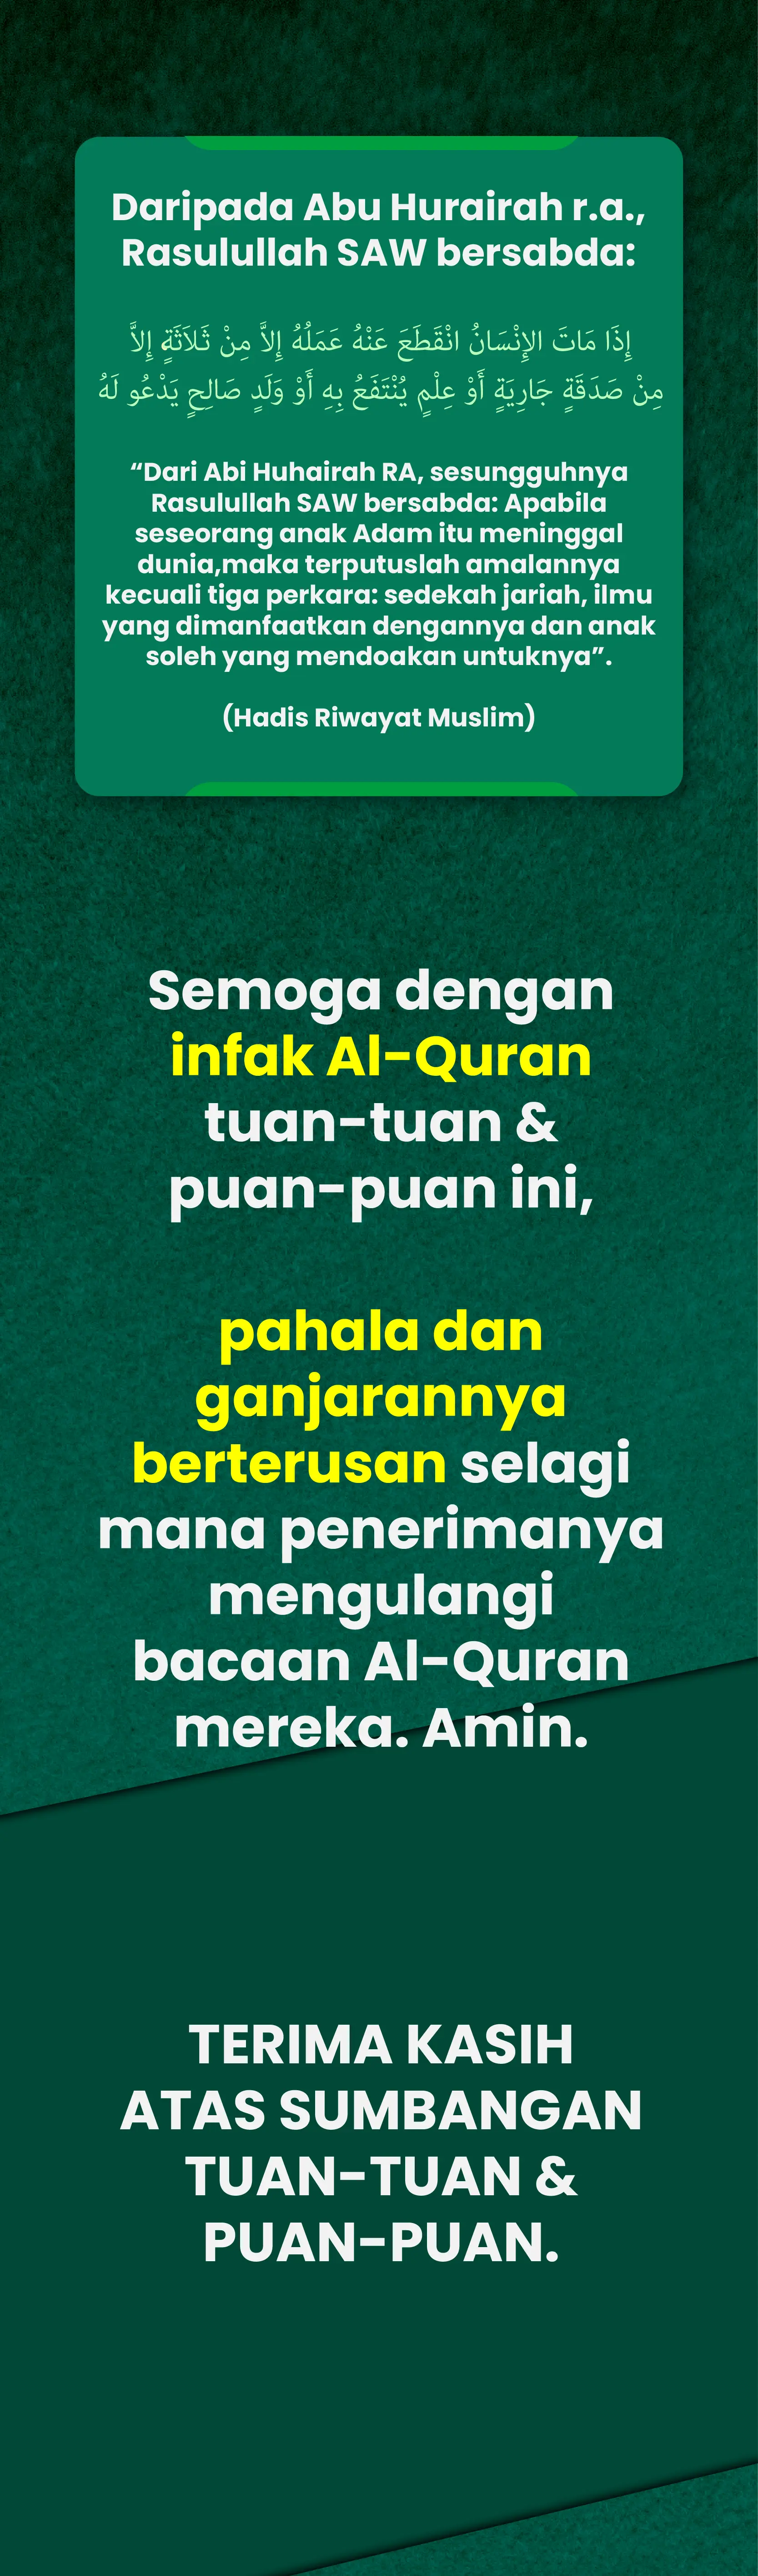 Infak Al-Quran LP 09